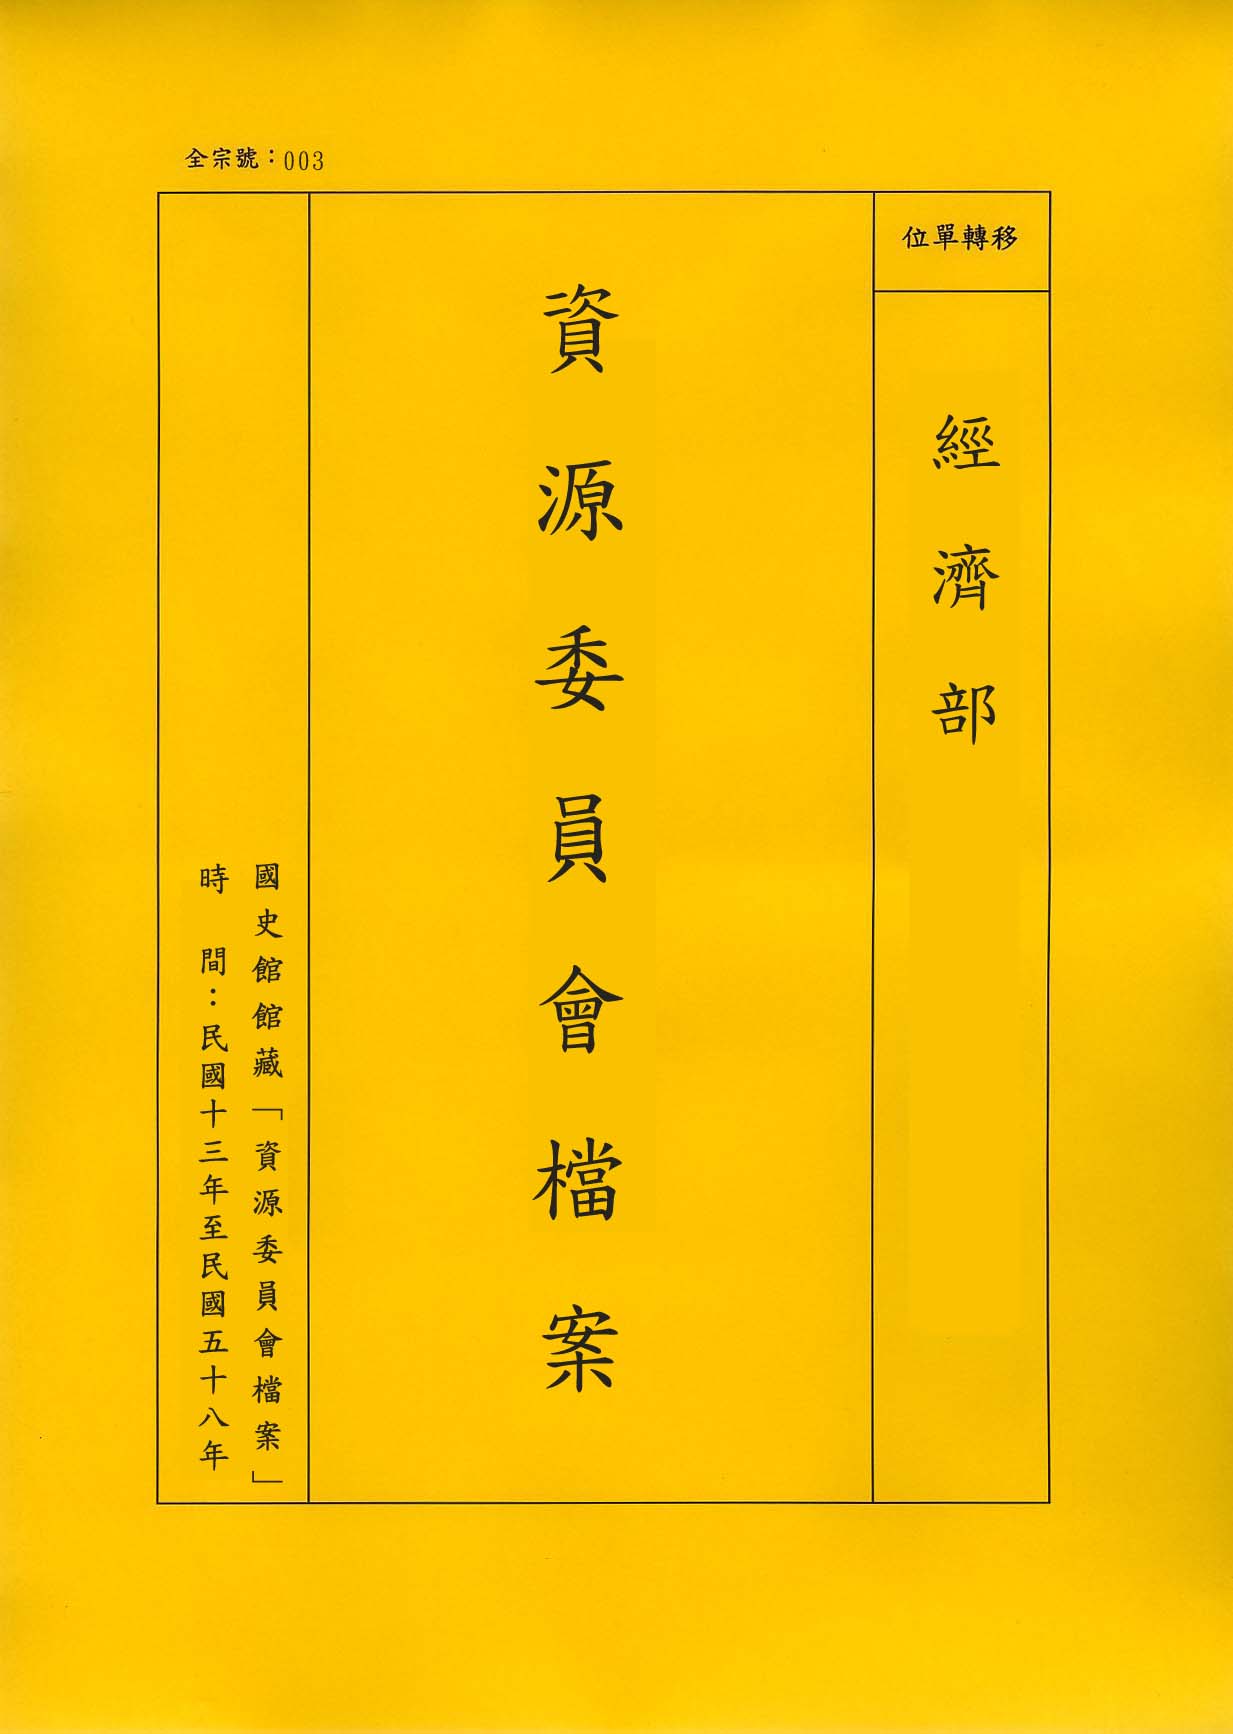 卷名:織襪工廠調查表─上海(七)(003-010306-0200)